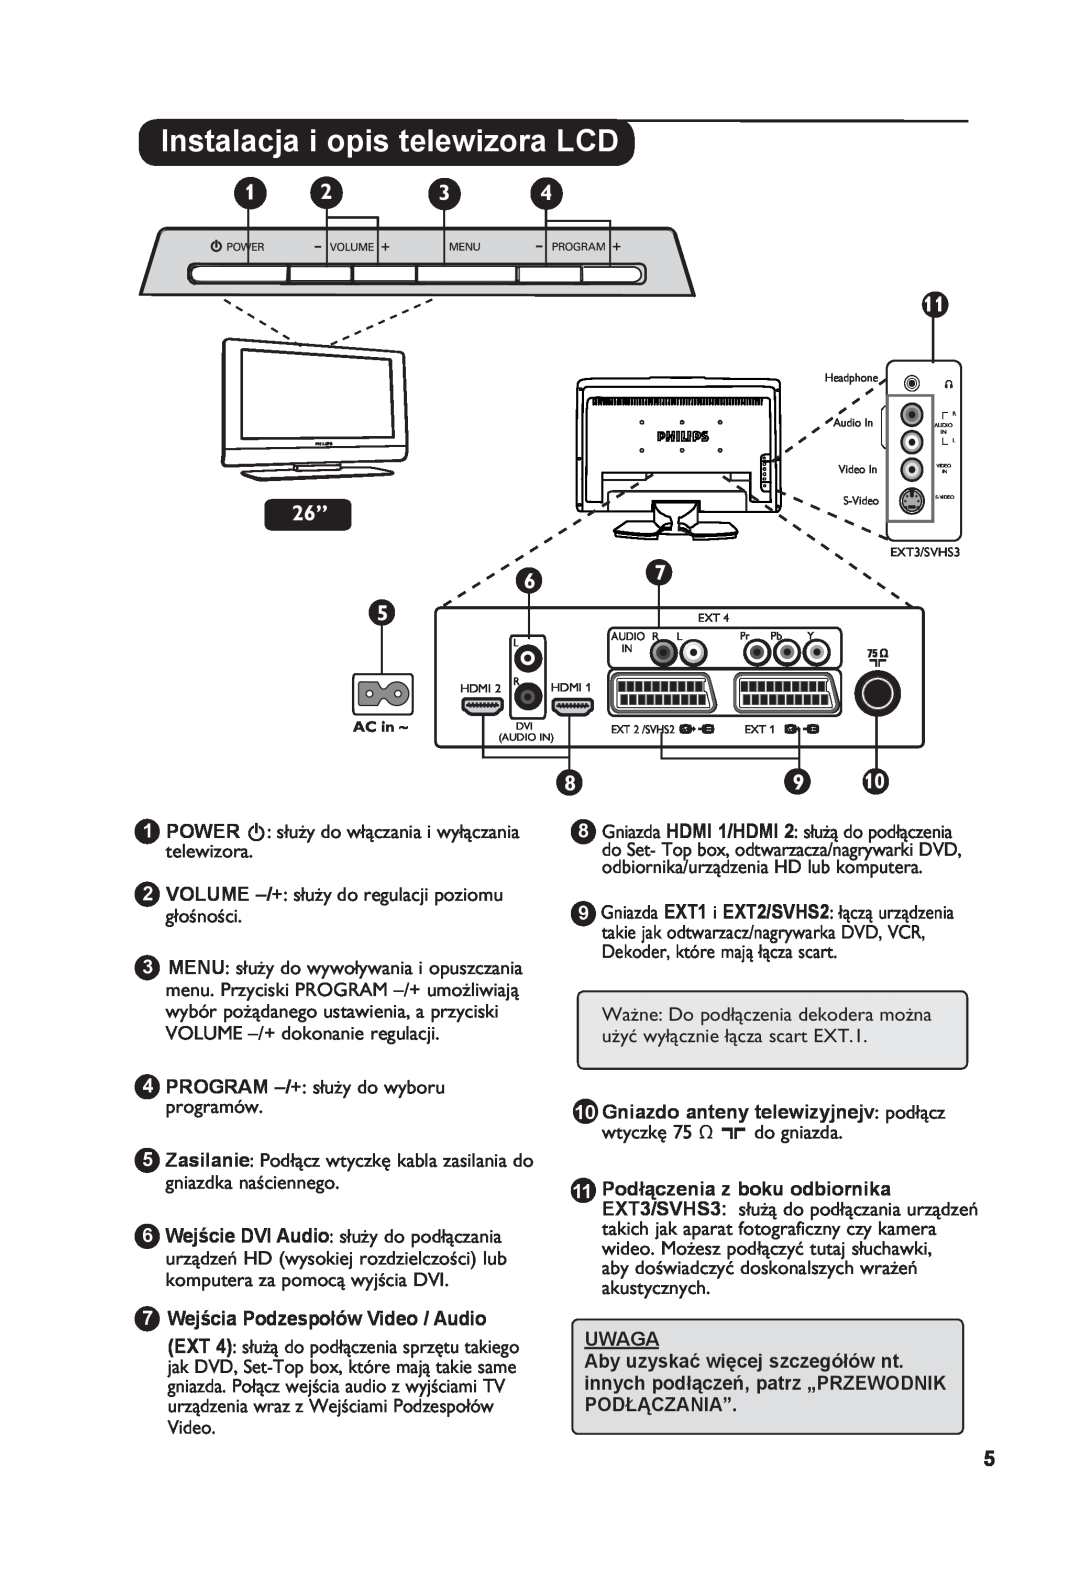 Philips 26PF7321 manual PROGRAM -/+ służy do wyboru programów, 7 Wejścia Podzespołów Video / Audio, Uwaga 